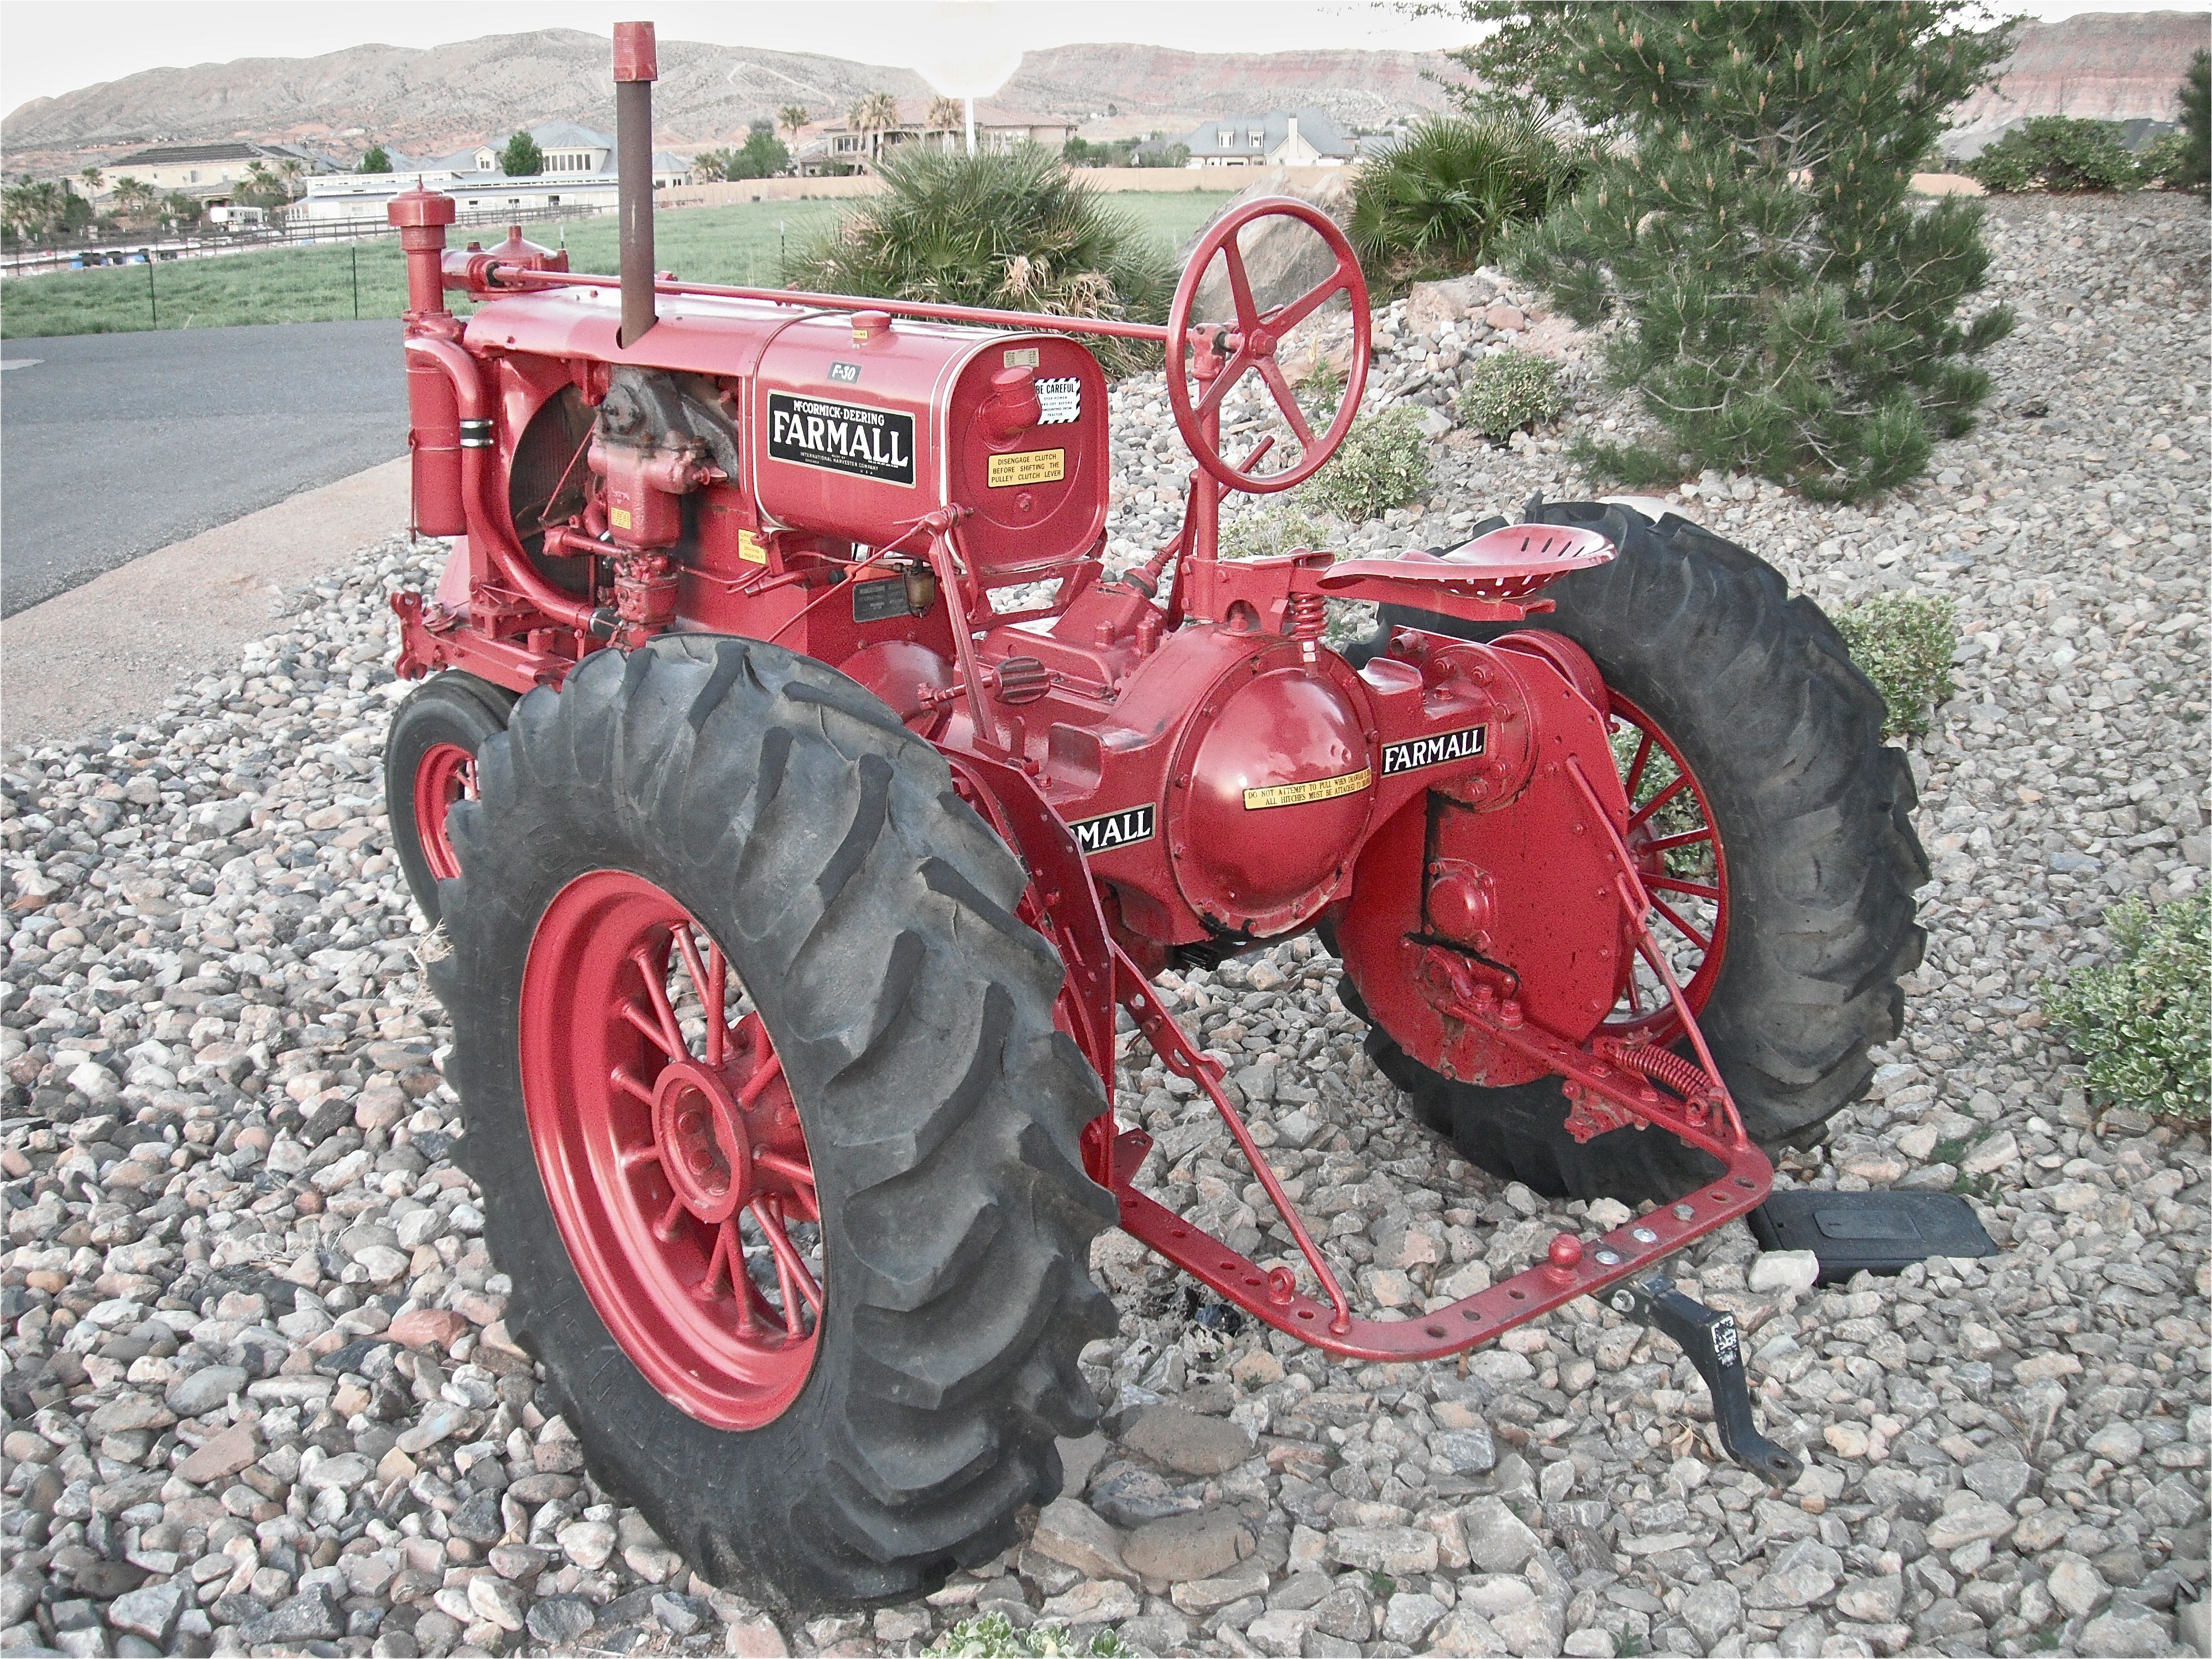 1939 farmall f30 vintage tractors antique tractors antique cars farmall tractors old